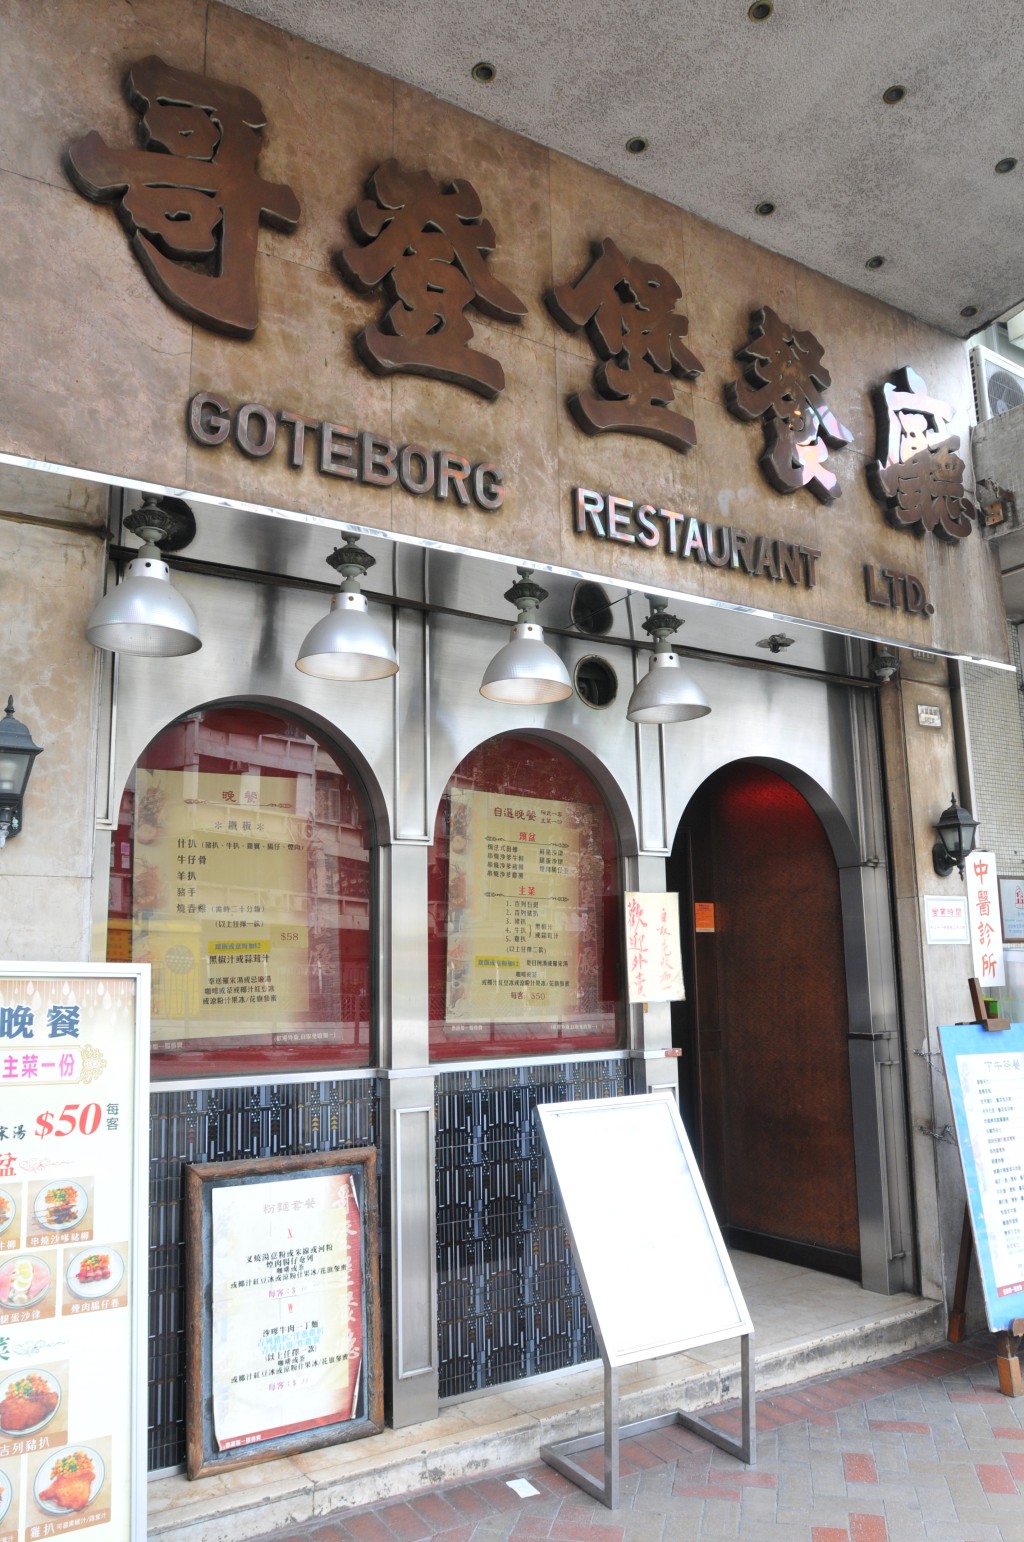 哥登堡餐厅屹立土瓜湾马头围道40多年。